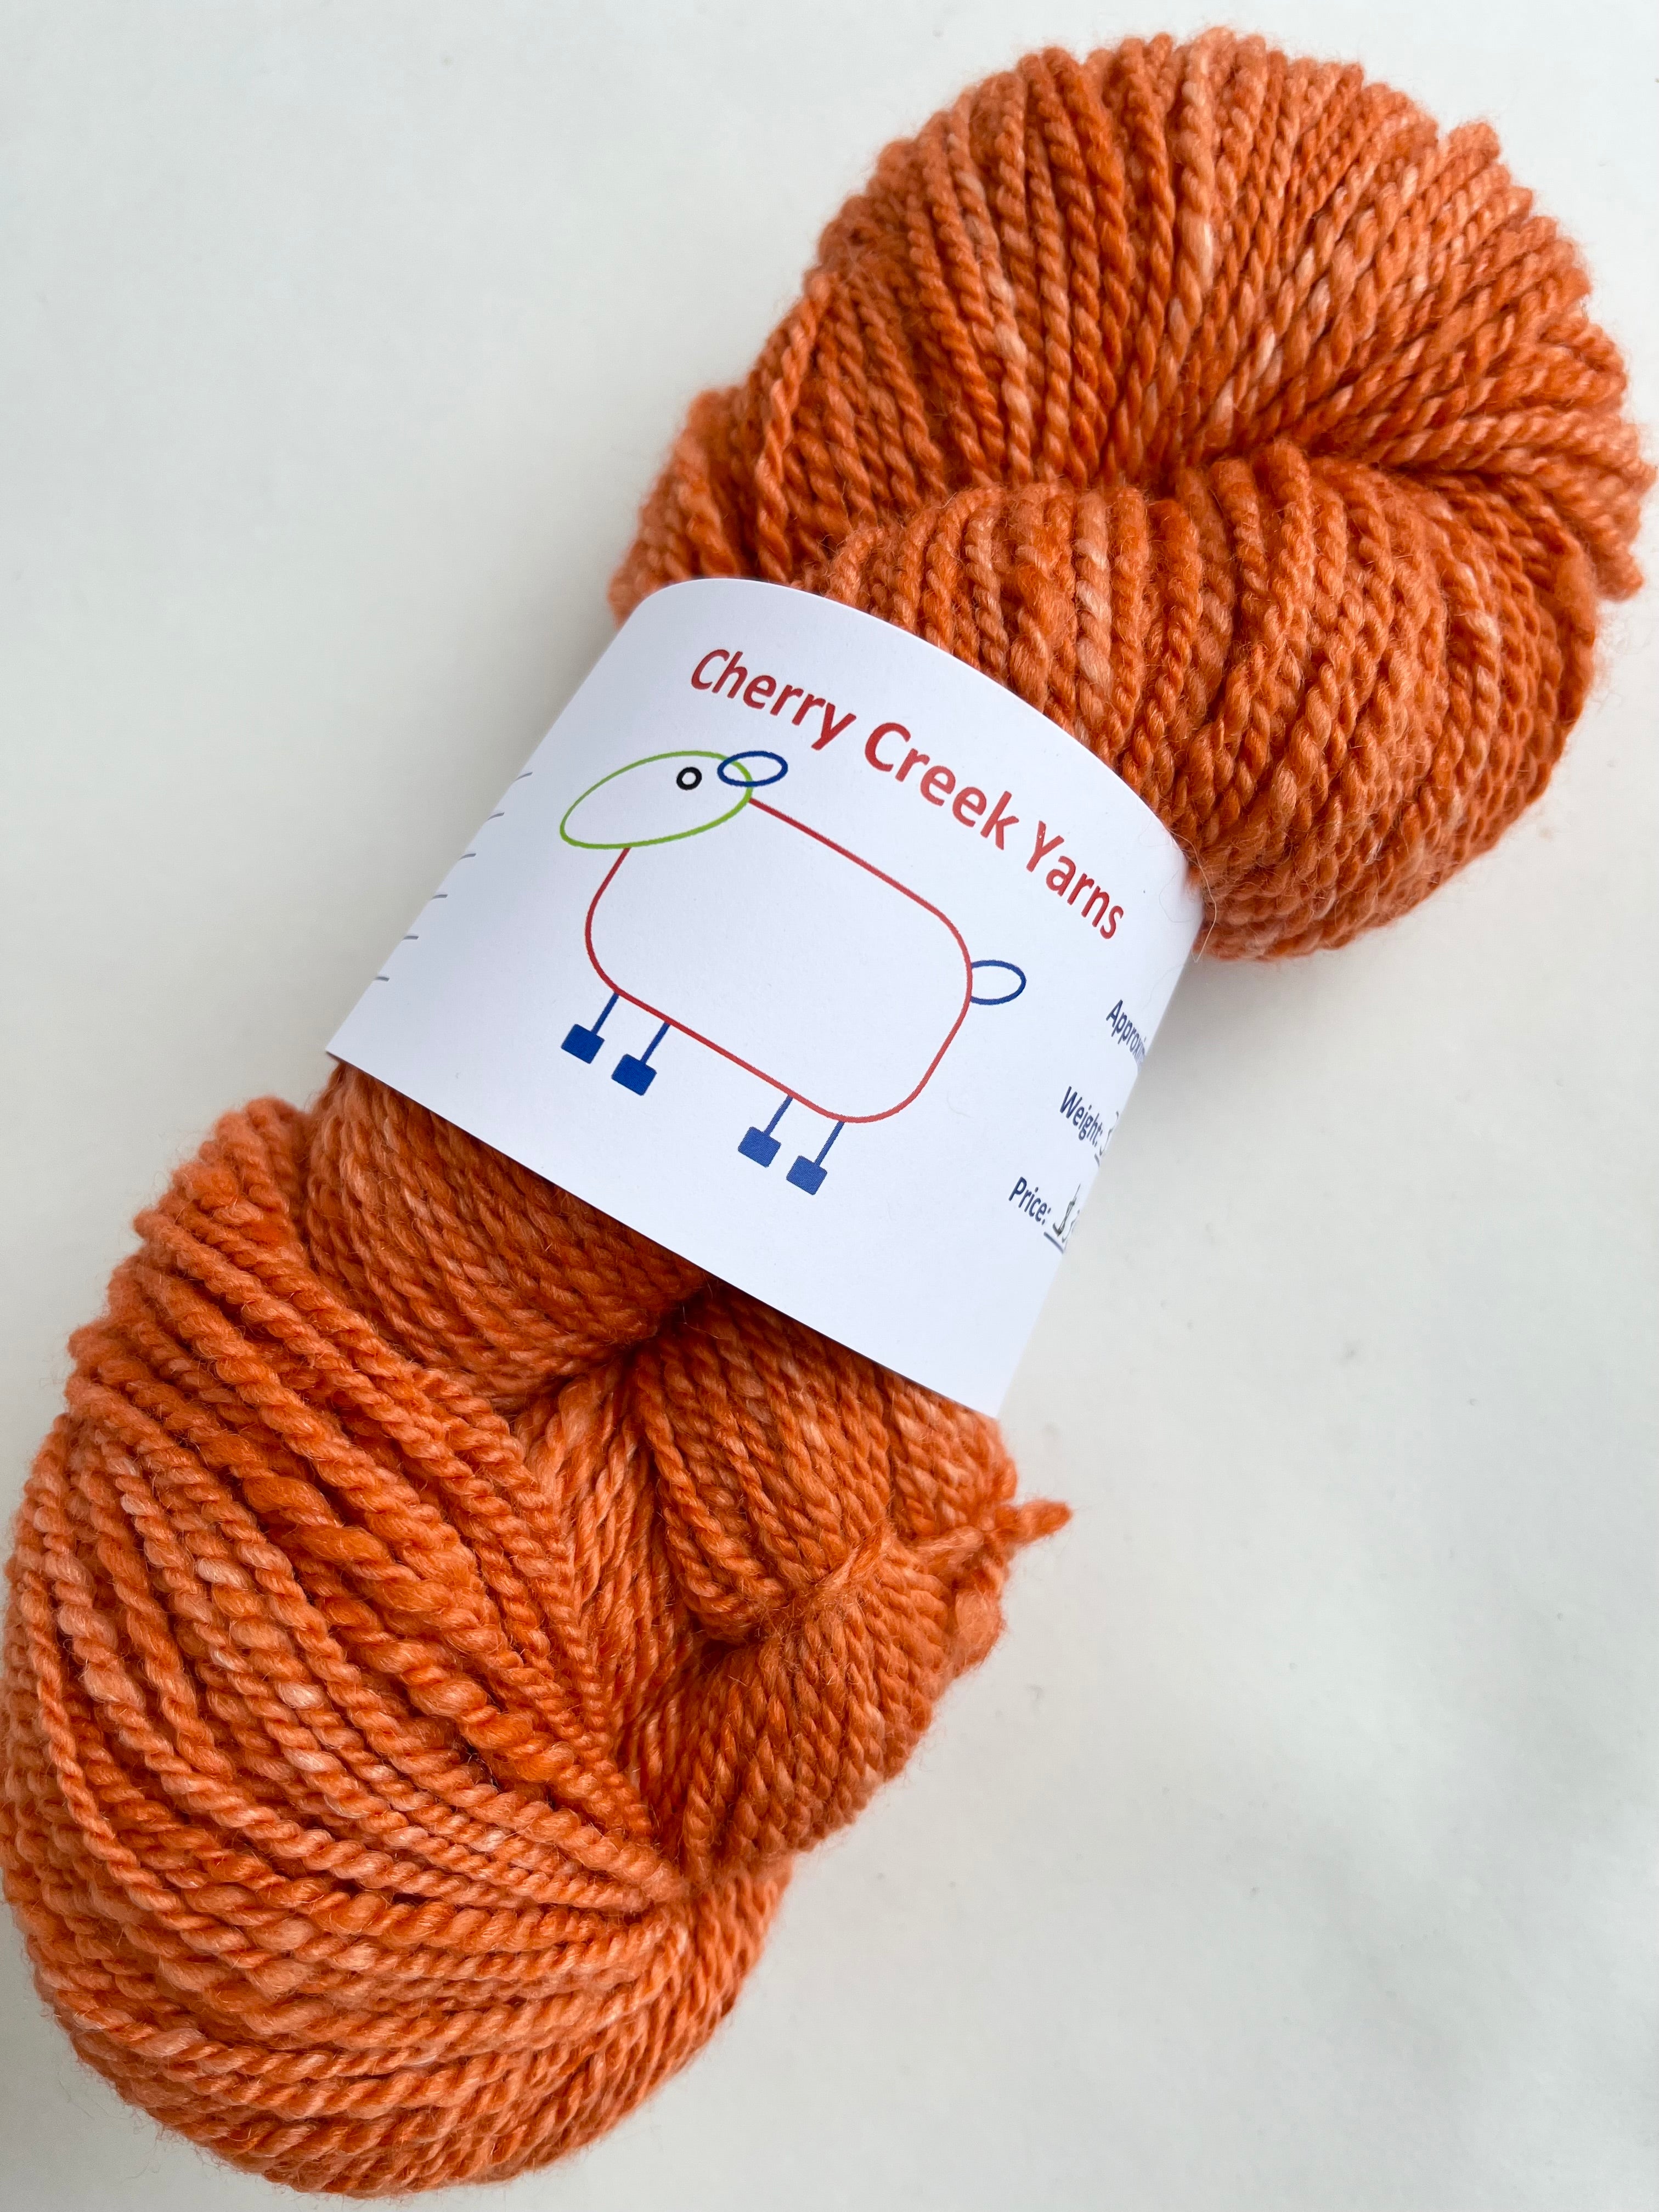 Cherry Creek Handspun Yarn - Hand Dyed Merino 60